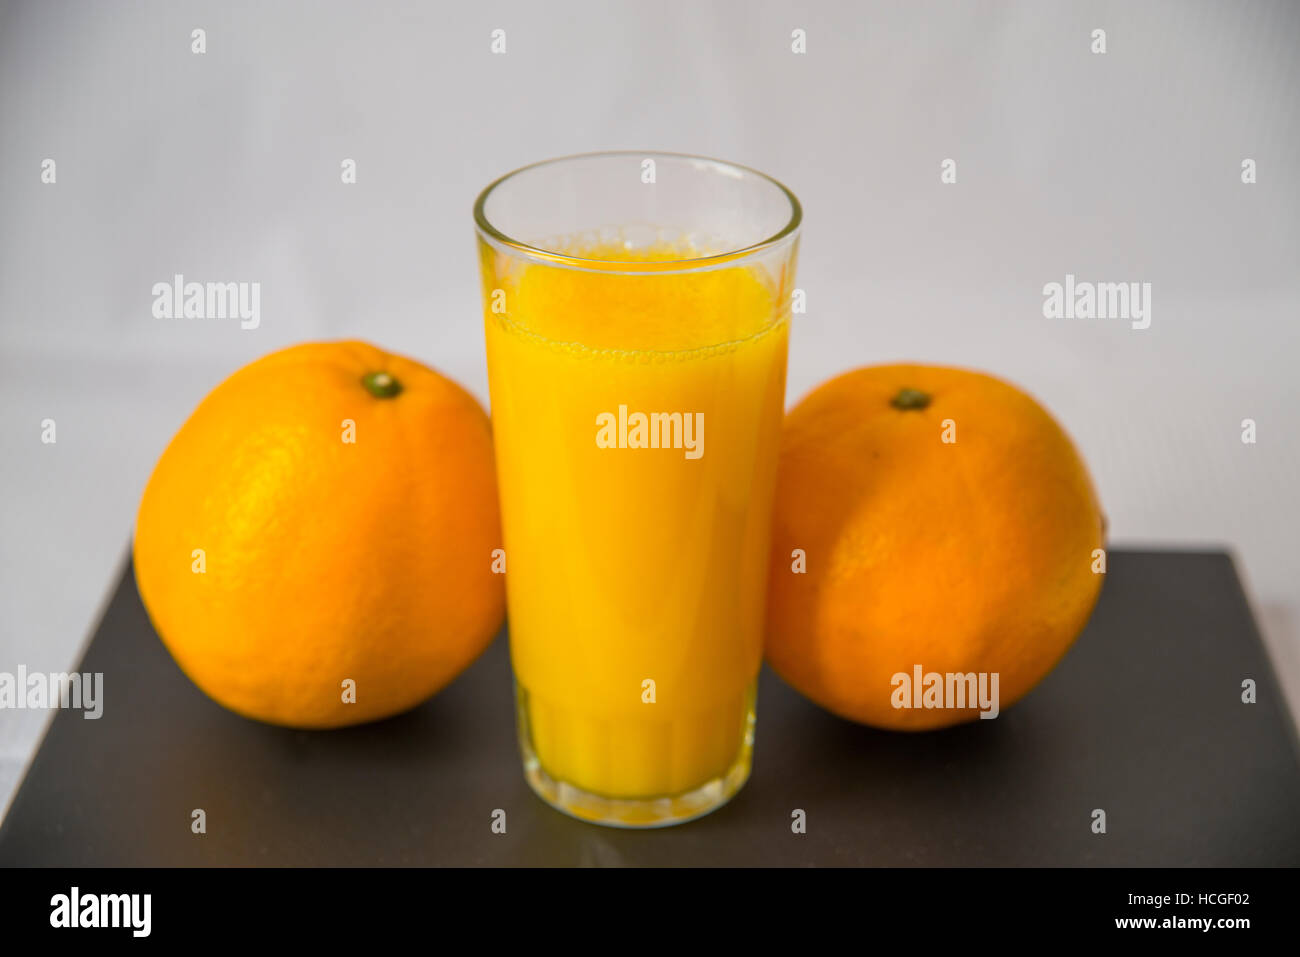 Vaso de zumo de naranja y dos naranjas. Still life. Foto de stock